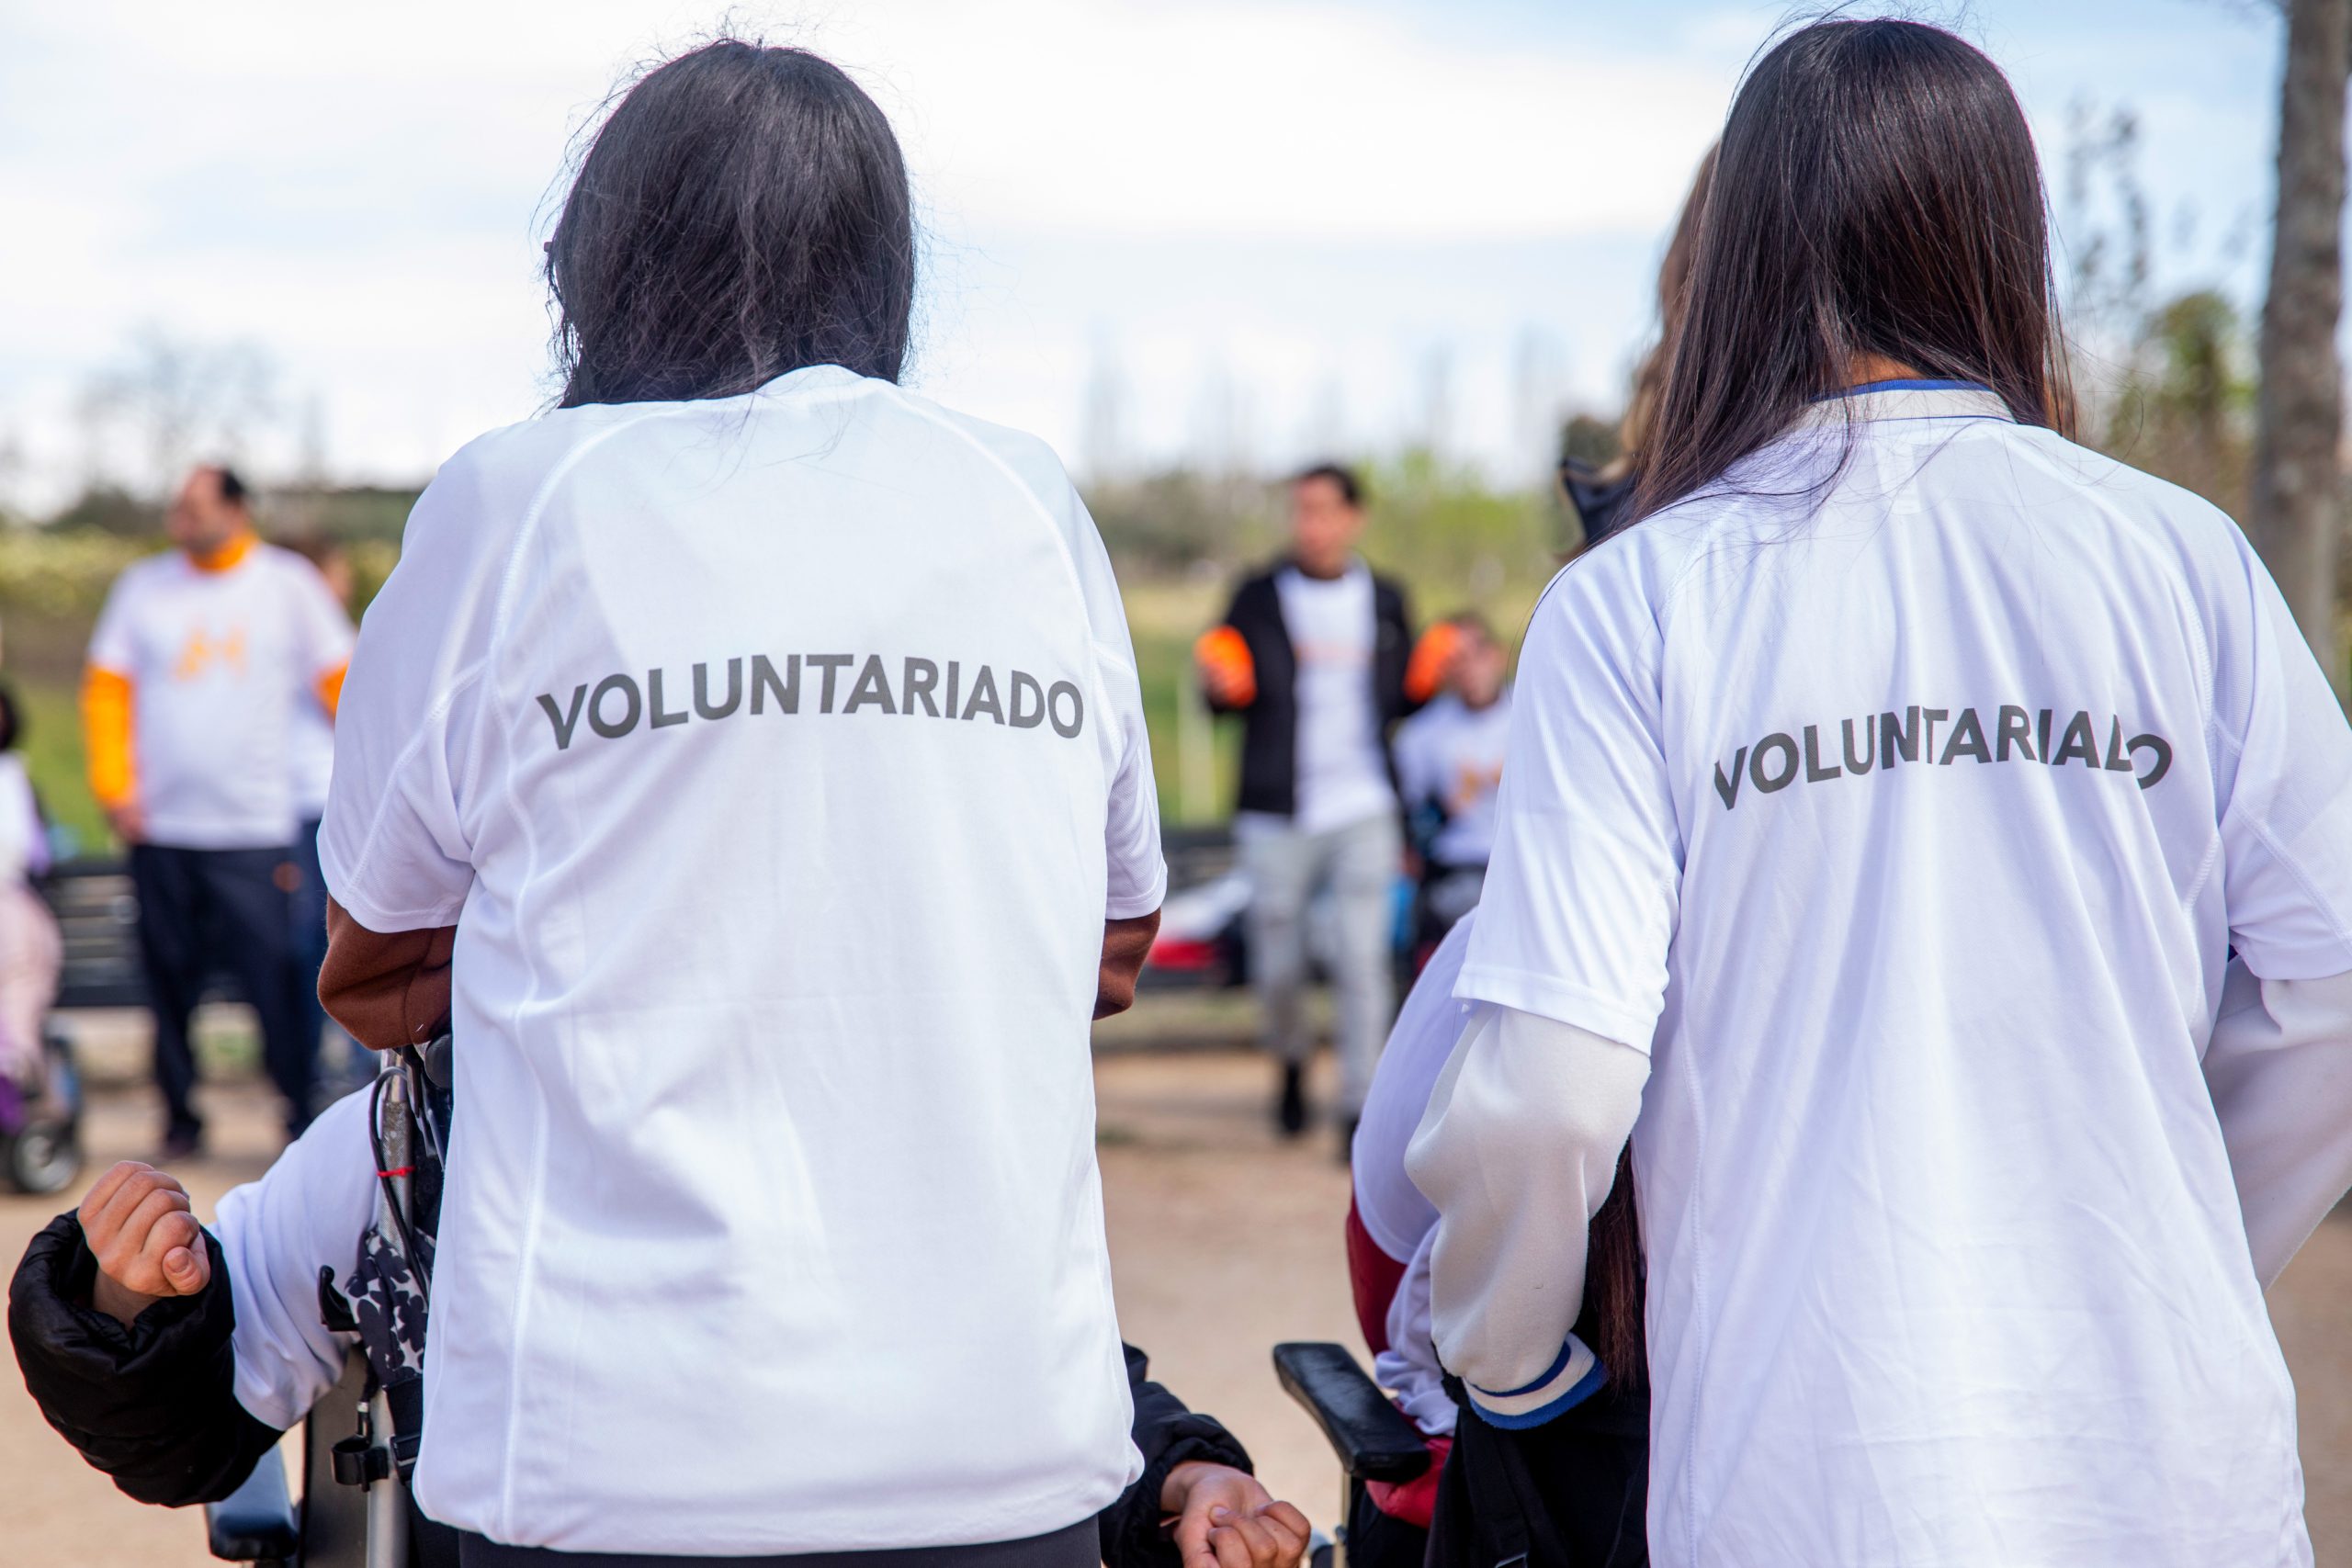 Voluntarias de Masnatur con la camiseta de la Fundación